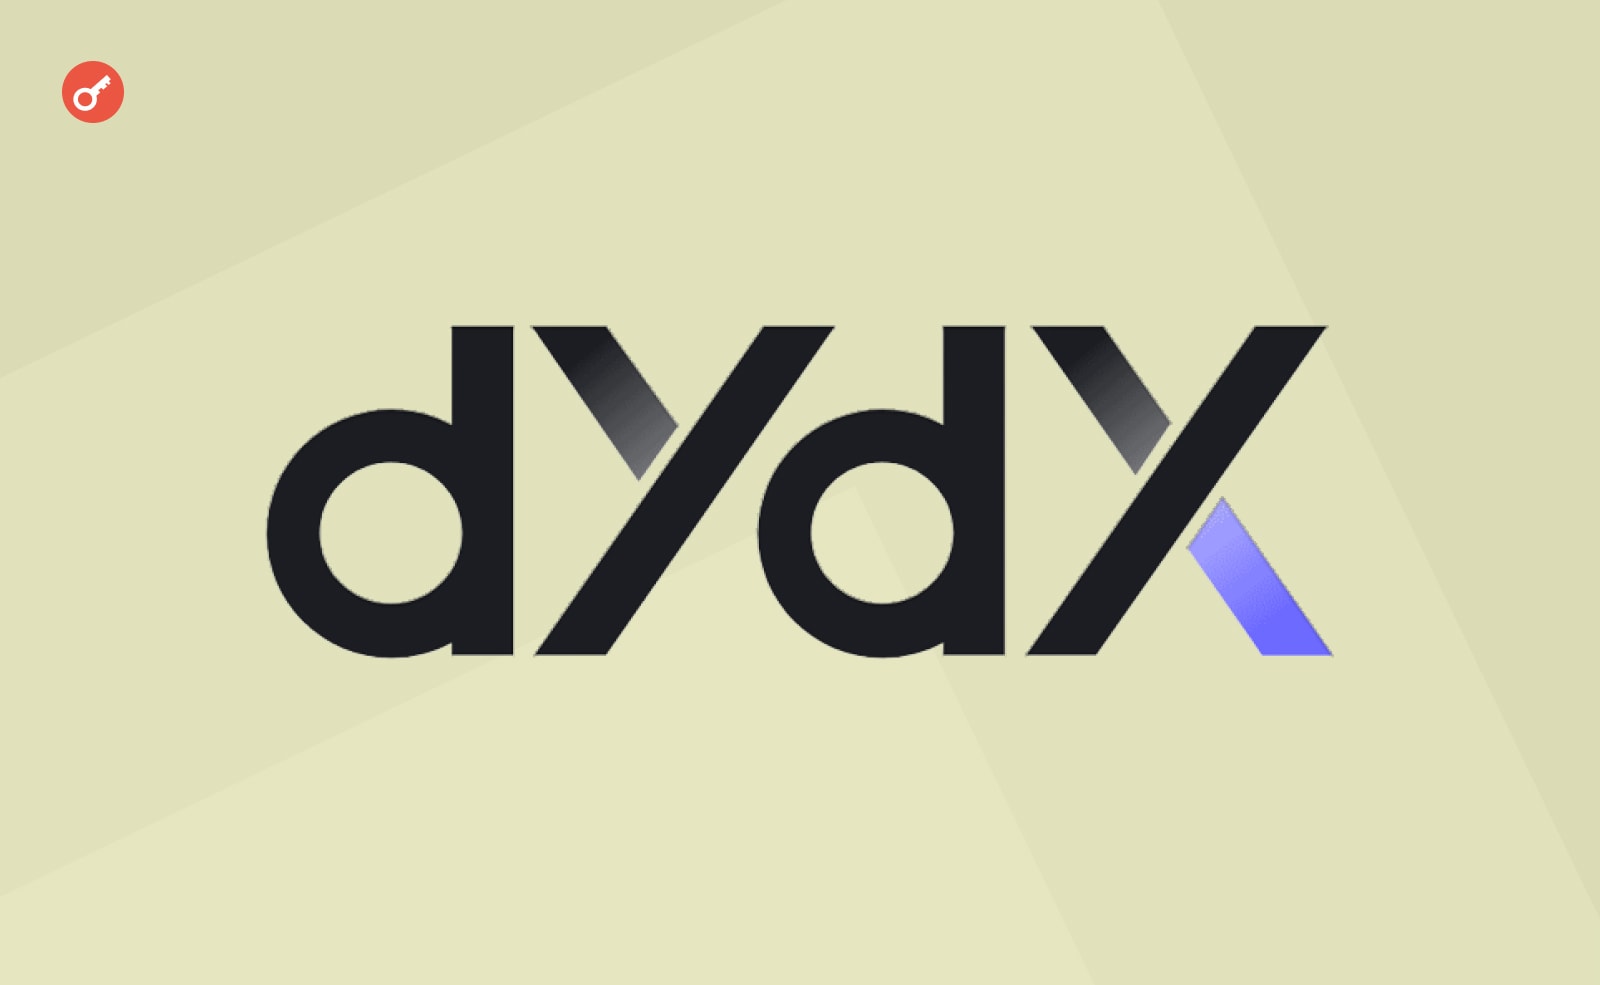 Биржа dYdX отложила разлок токенов для инвесторов и комьюнити. Заглавный коллаж новости.